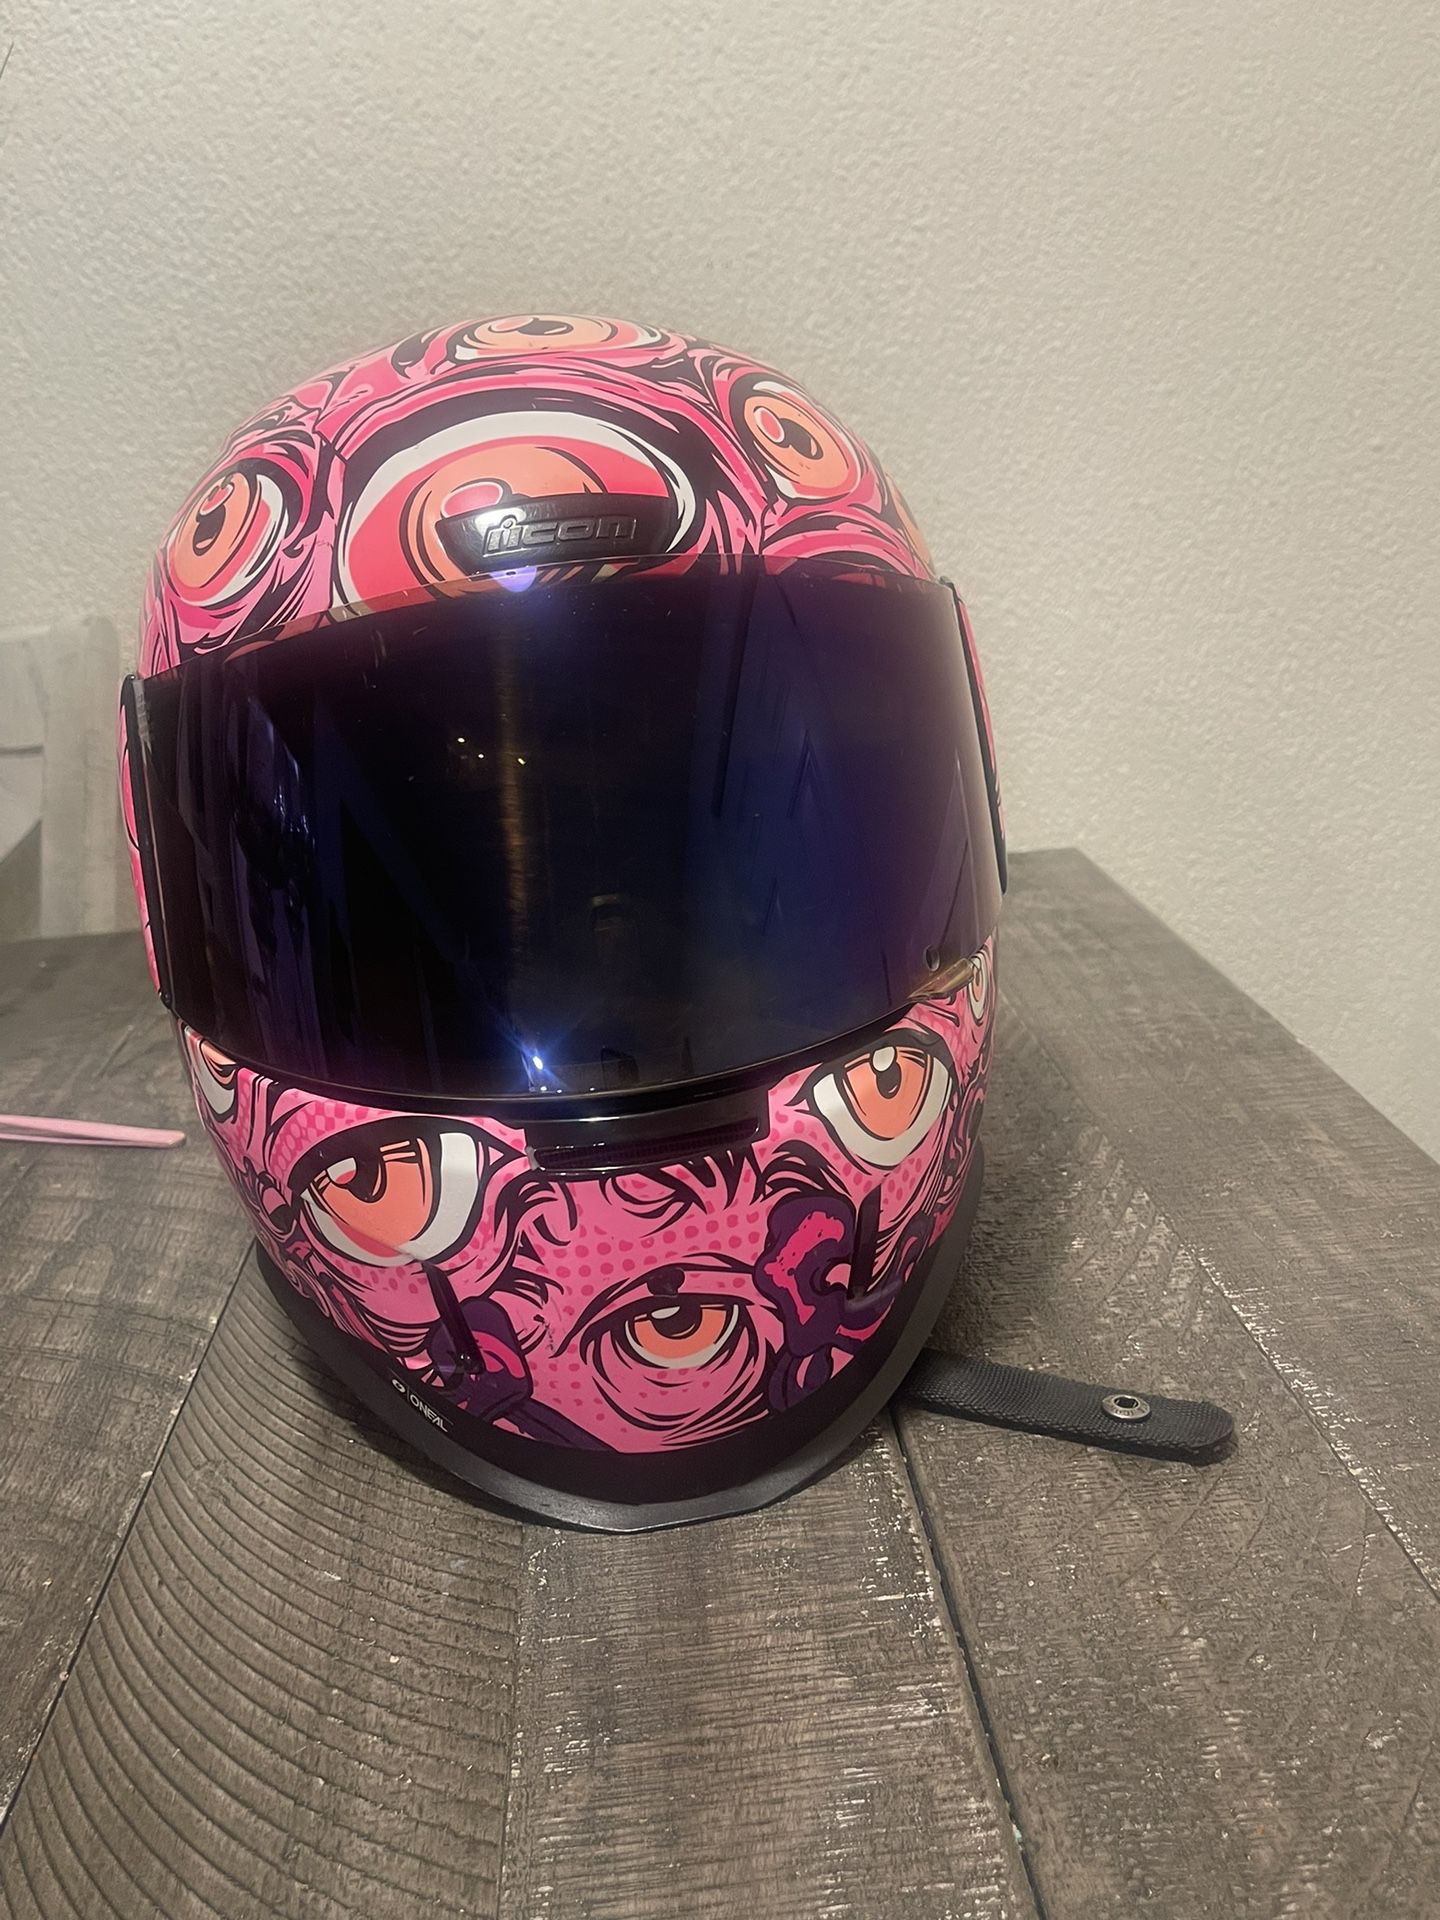 Motocicle helmet